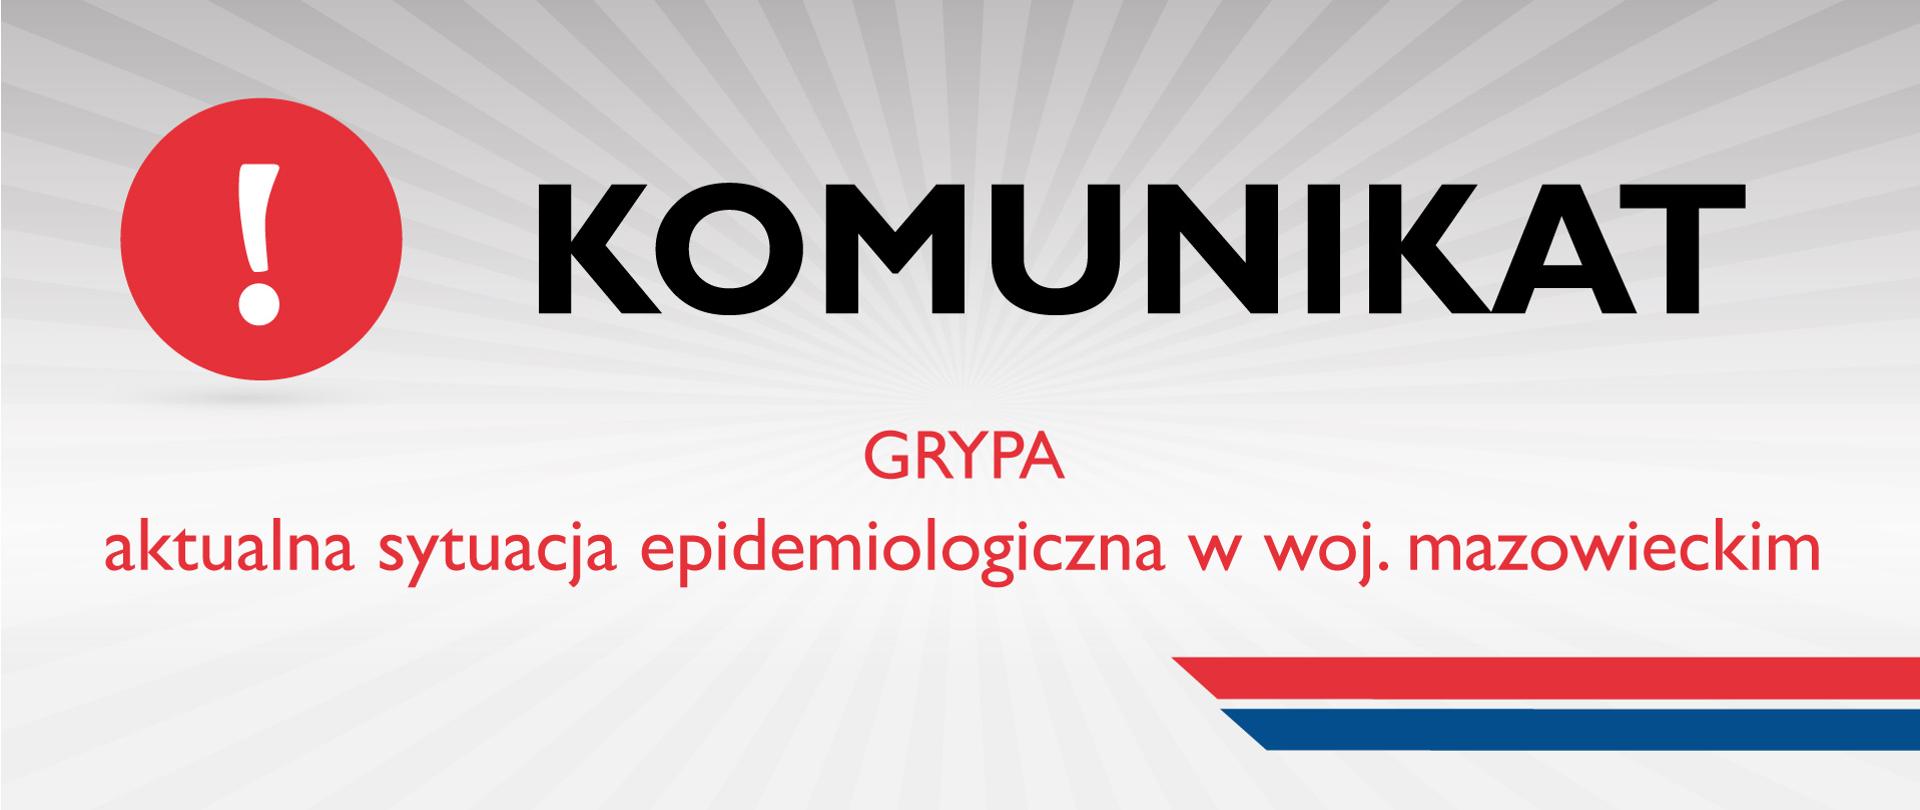 Banner z napisem Komunikat: GRYPA, sytuacja epidemiologiczna w woj.mazowieckim